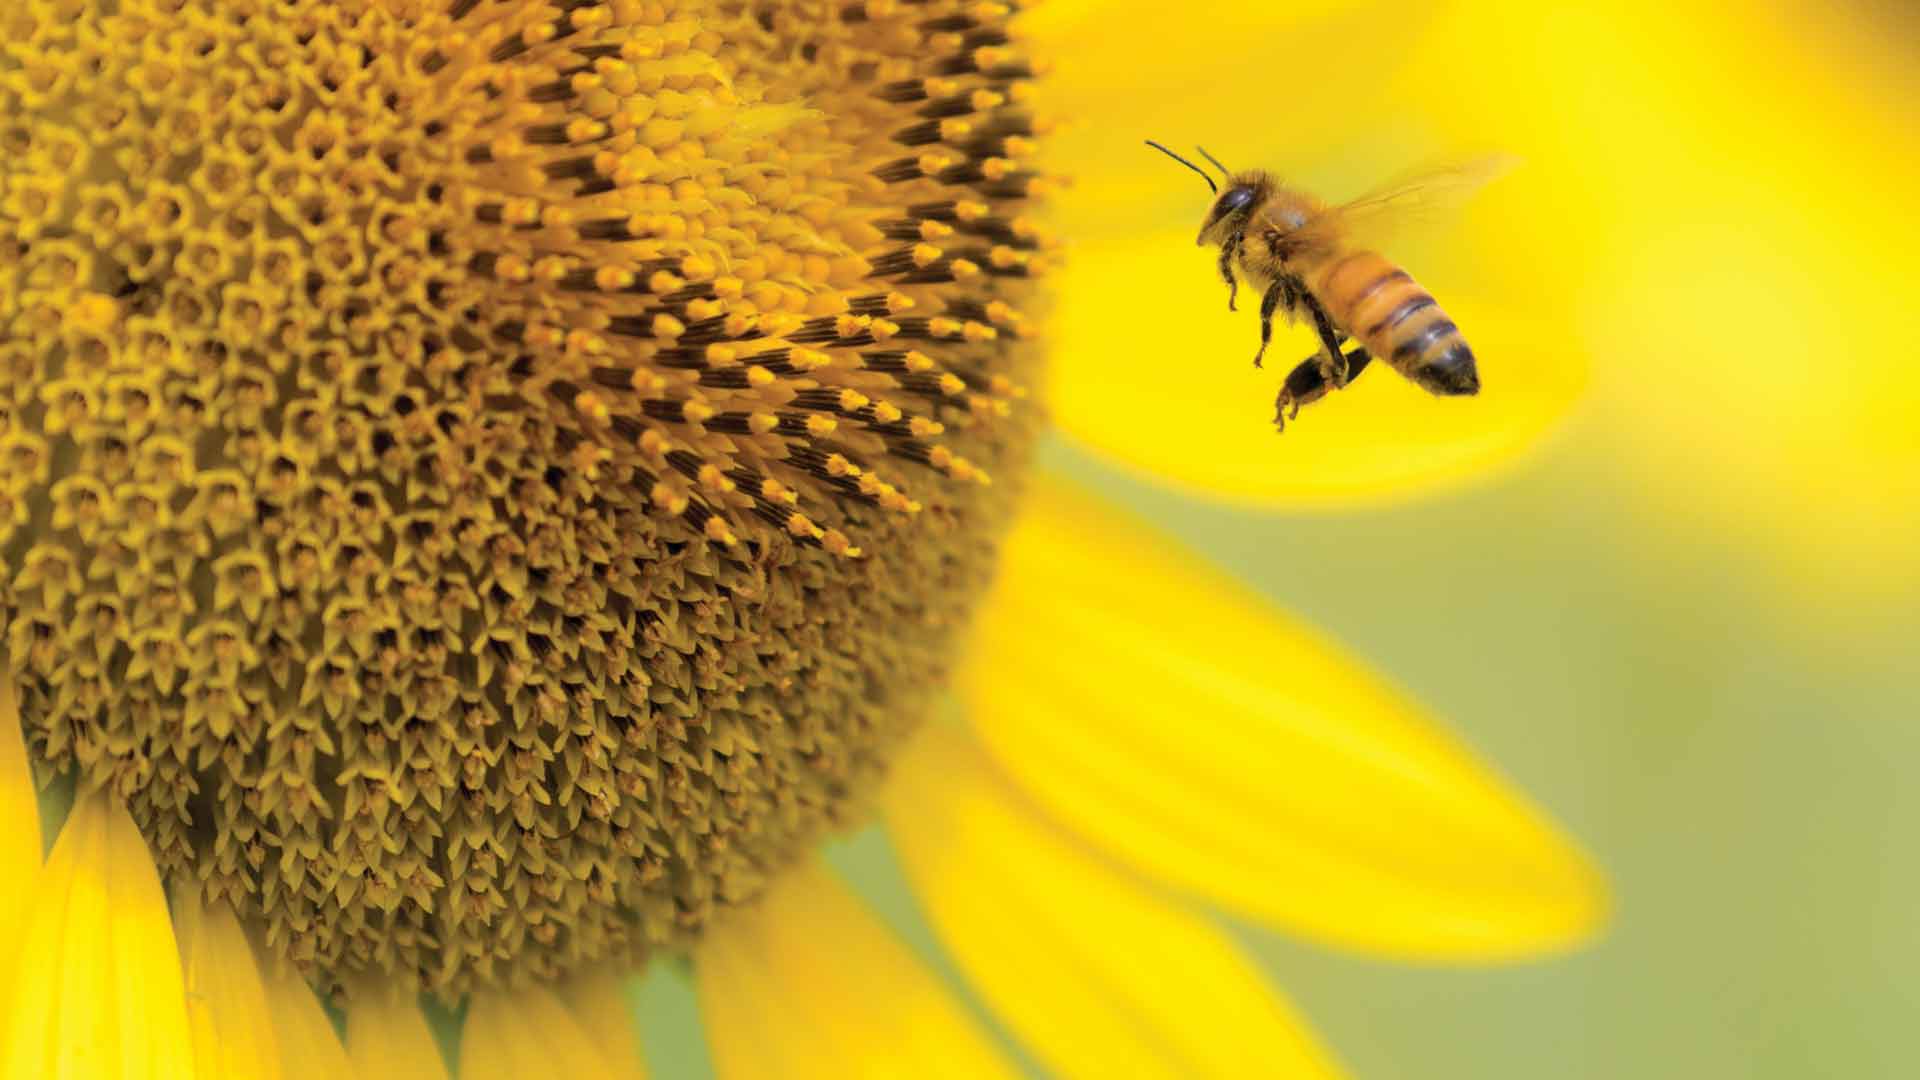 a bee approaching a sunflower